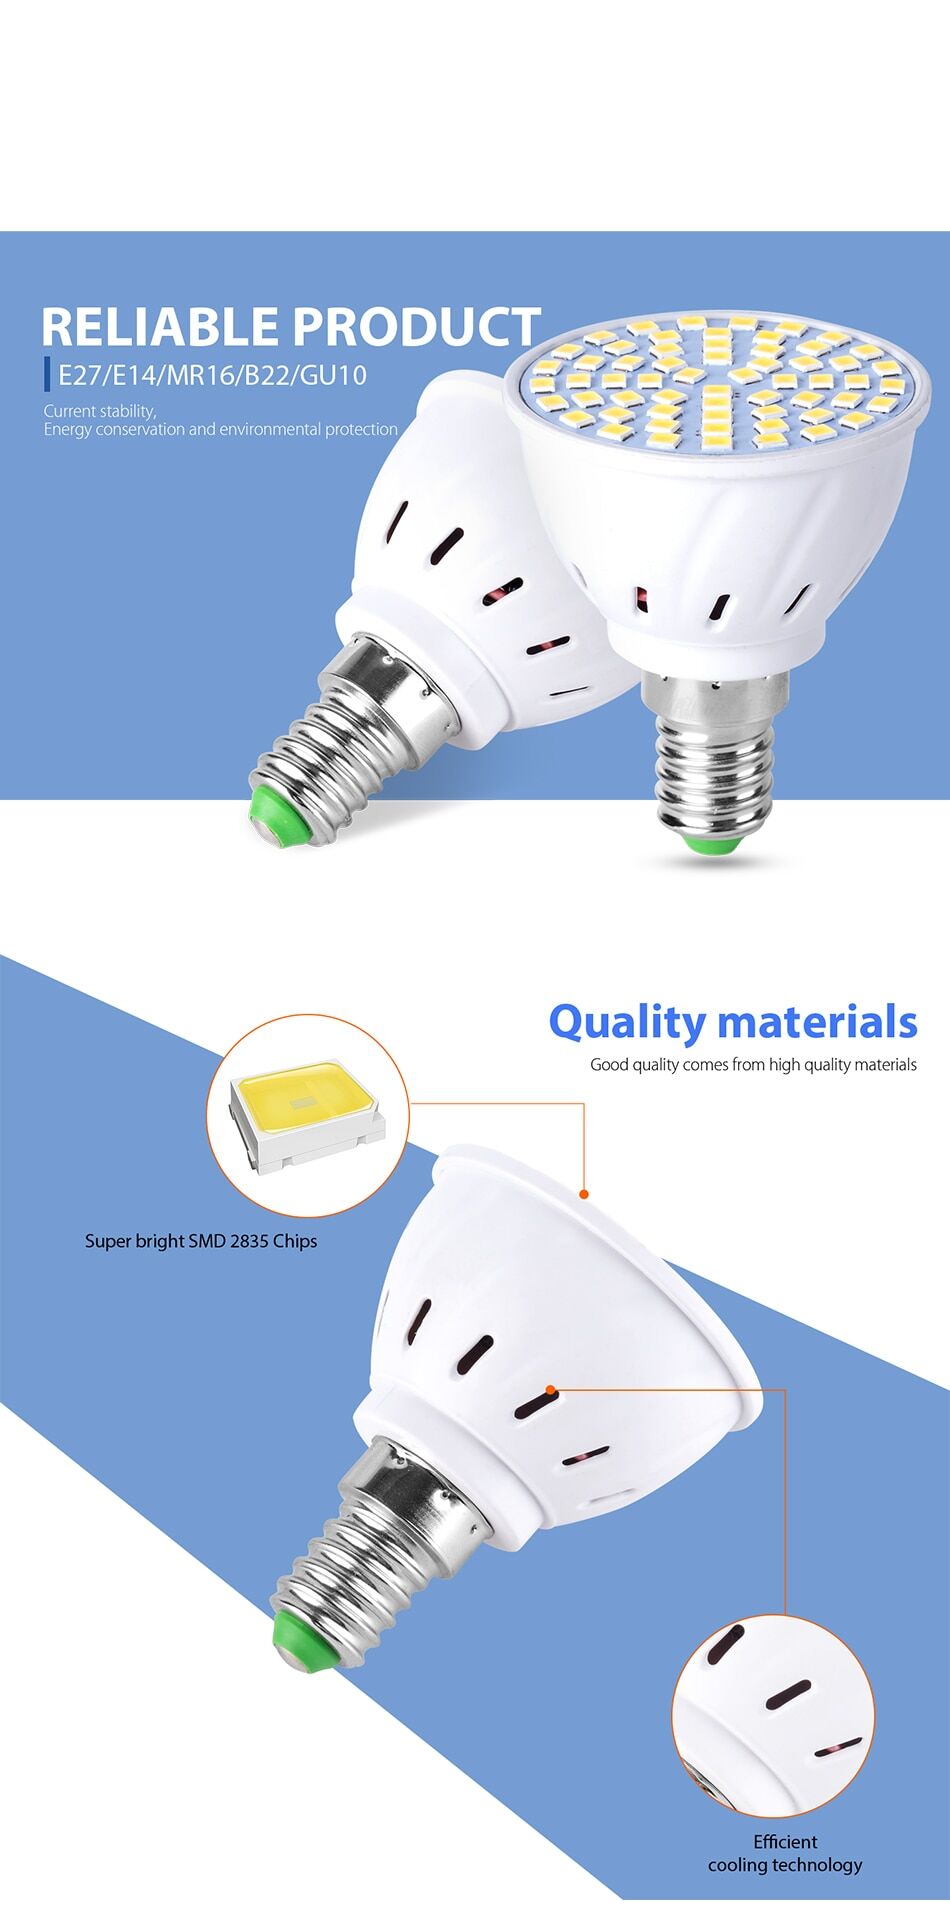 10pce 220v spot light bulbs led 4w 6w 8w socket e27 e14 gu10 mr16 b22 € 26,66